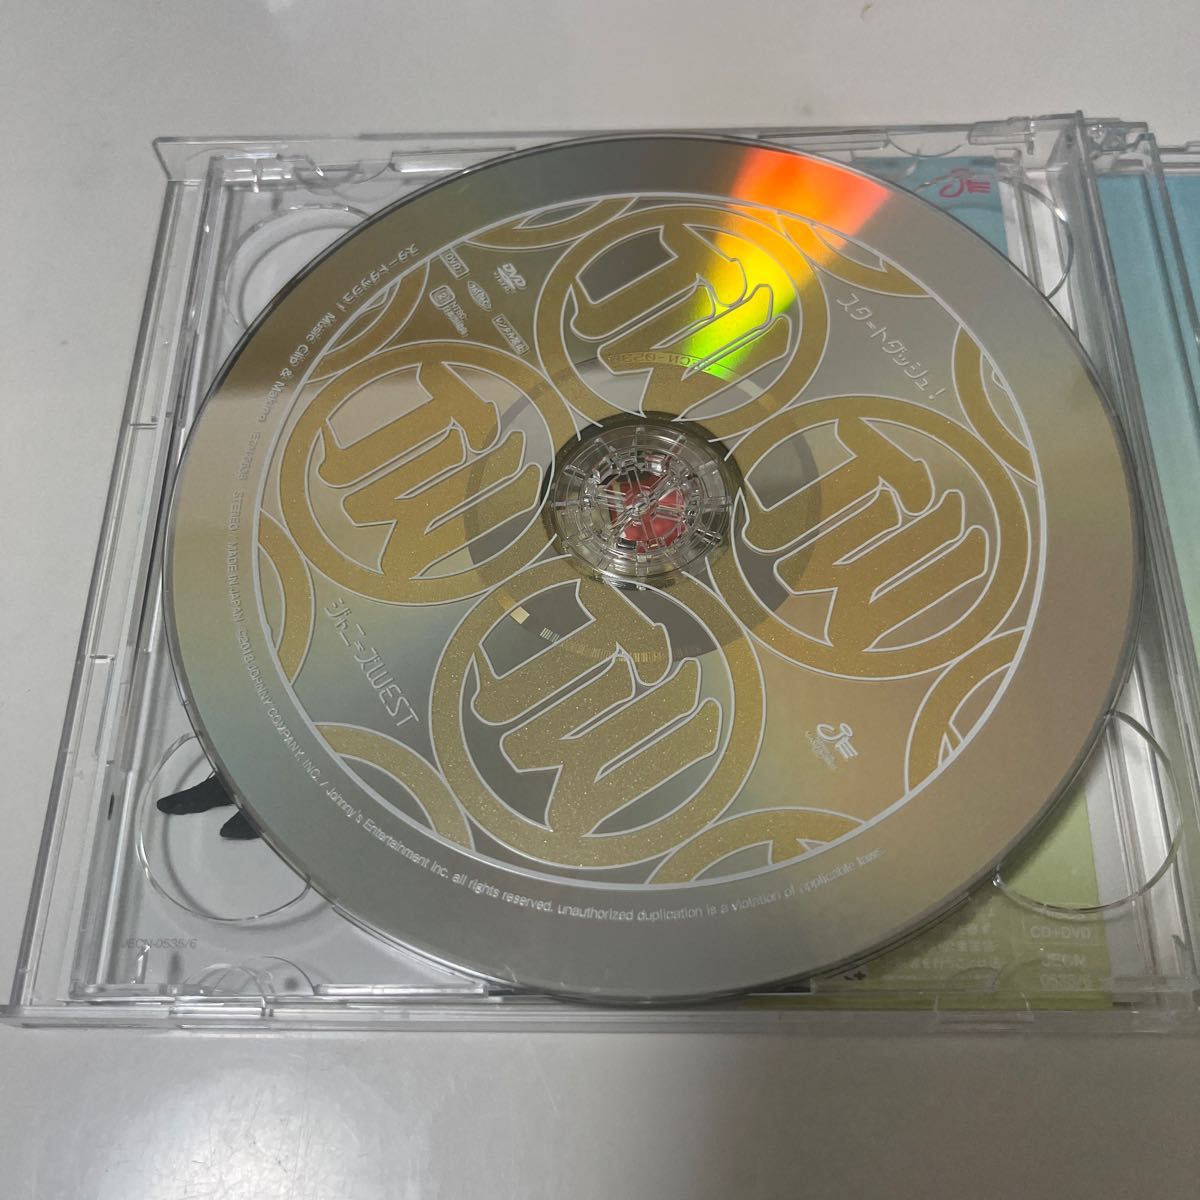 スタートダッシュ! 初回盤A ジャニーズWEST CD  DVD付  初回限定盤